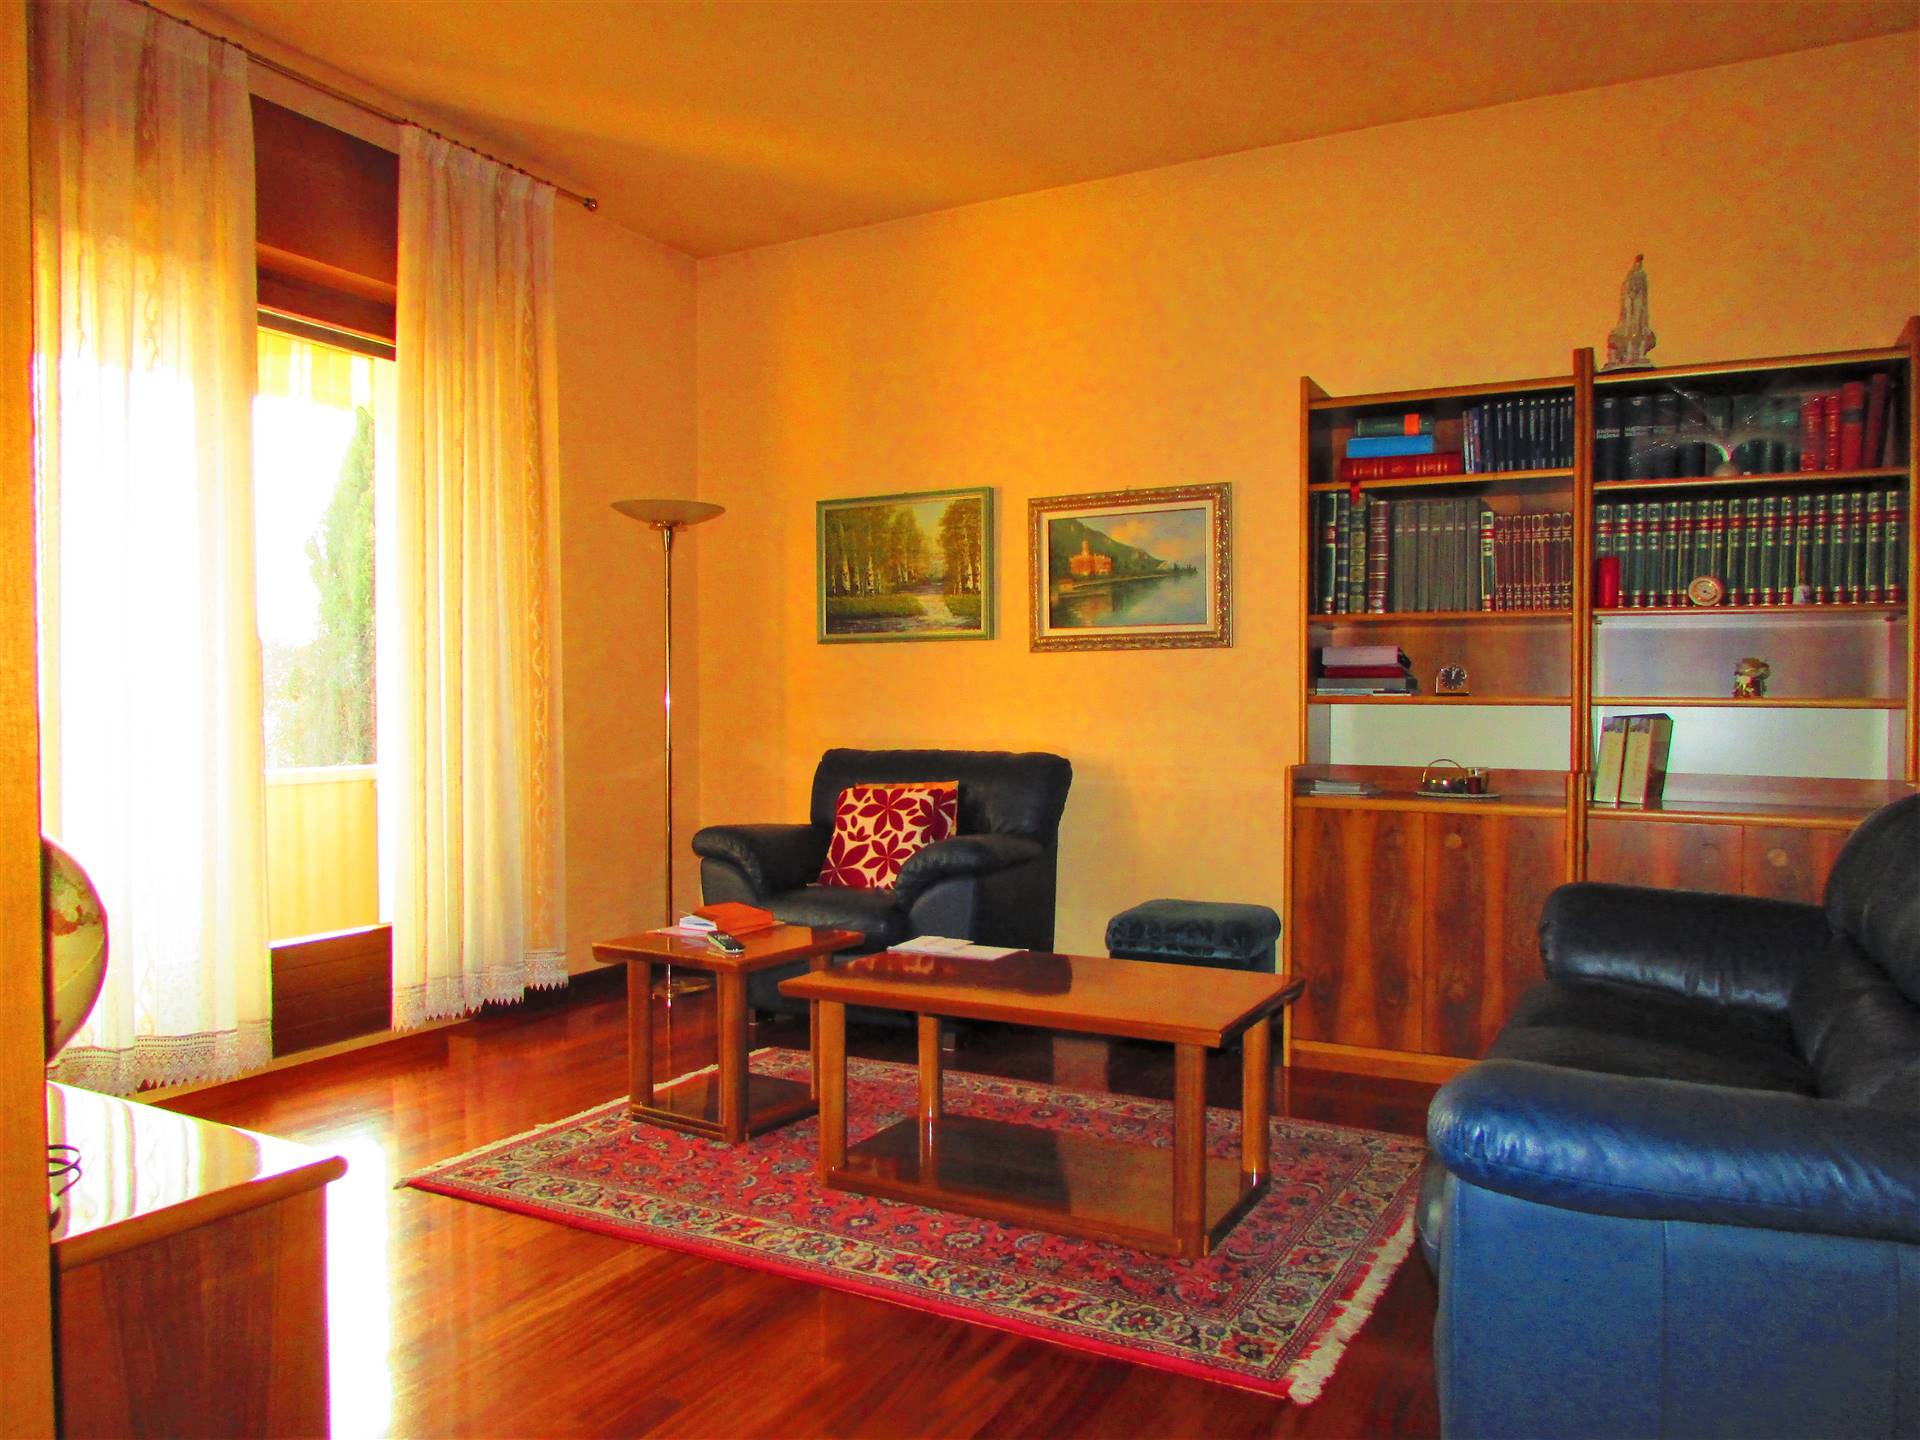 SAN BONIFACIO - Villa singola al piano rialzato composta di: ingresso, soggiorno, cucina, 3 camere da letto, bagno, terrazza; al piano seminterrato, 